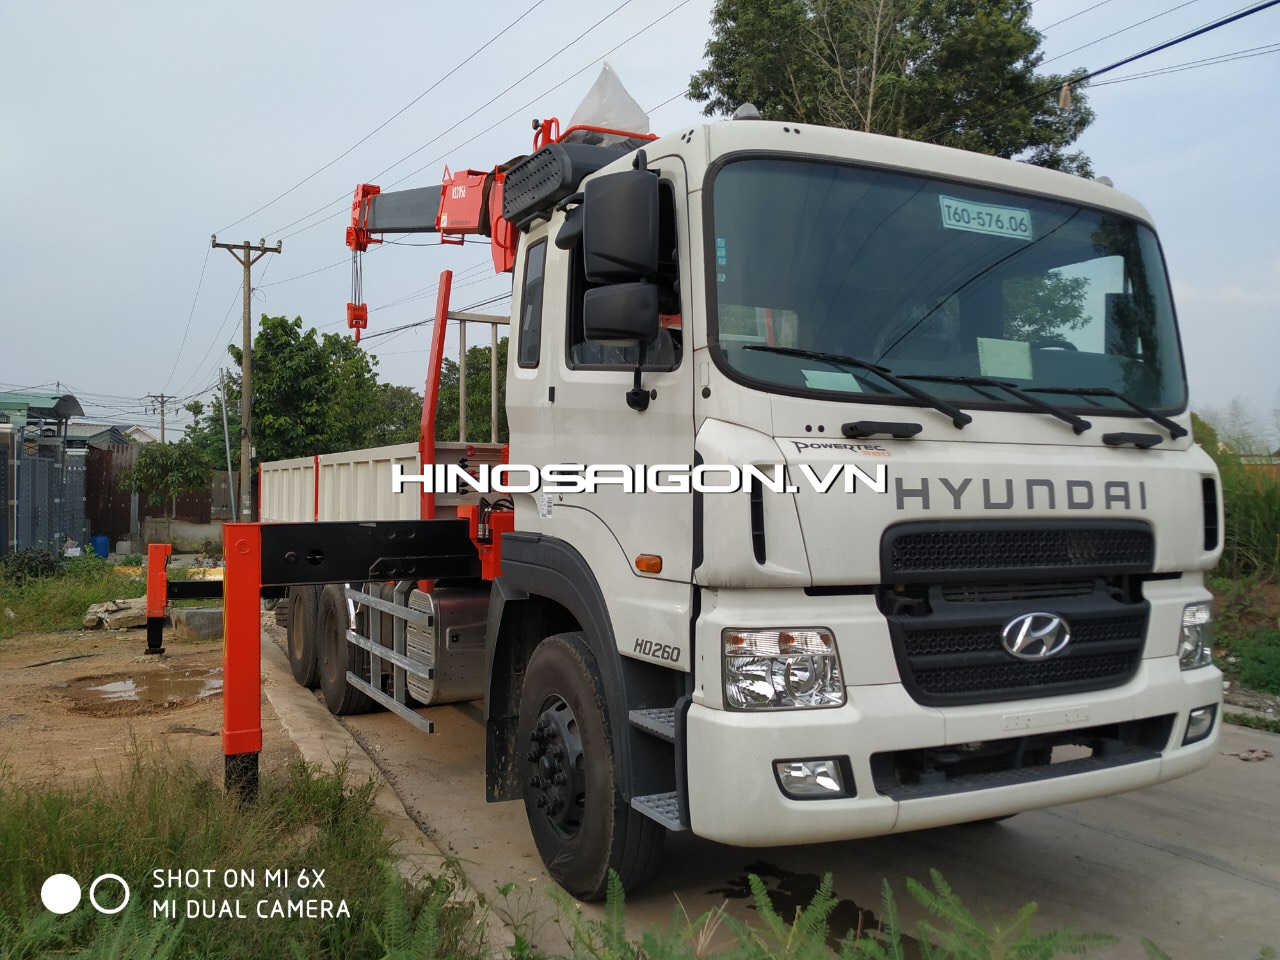 Hyundai hd260 lắp cẩu Kanglim KS2056 (8 tấn 6 khúc) tải trọng 9,2 tấn